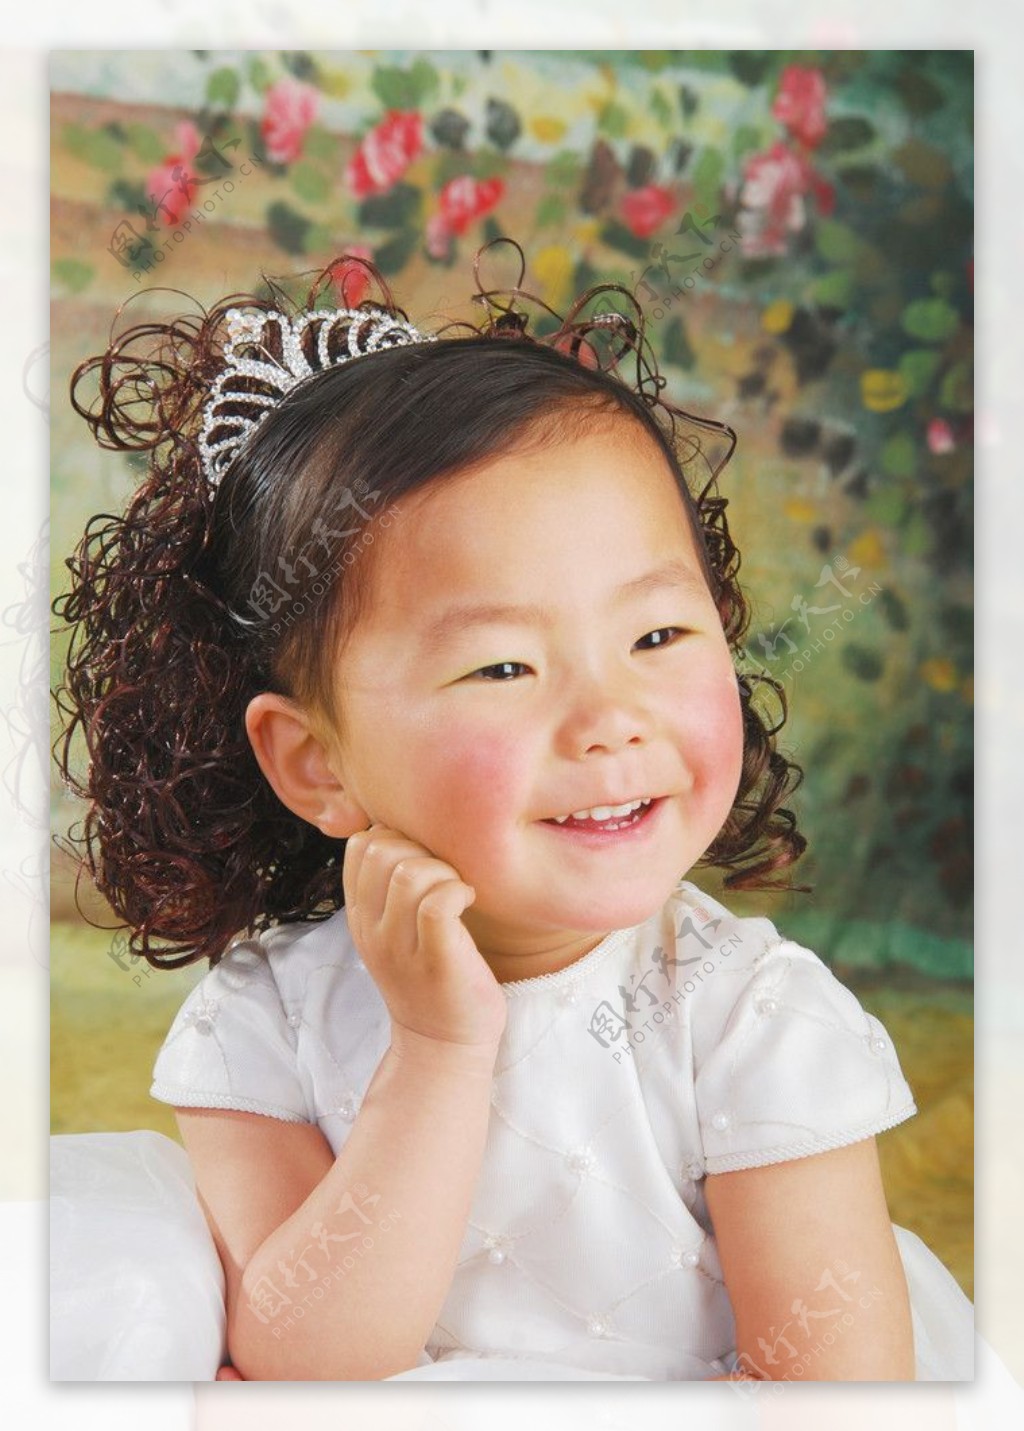 壁纸1400×1050黑白婴儿摄影 天使小宝宝图片壁纸壁纸,爱与纯真-可爱婴儿儿童摄影壁纸壁纸图片-摄影壁纸-摄影图片素材-桌面壁纸